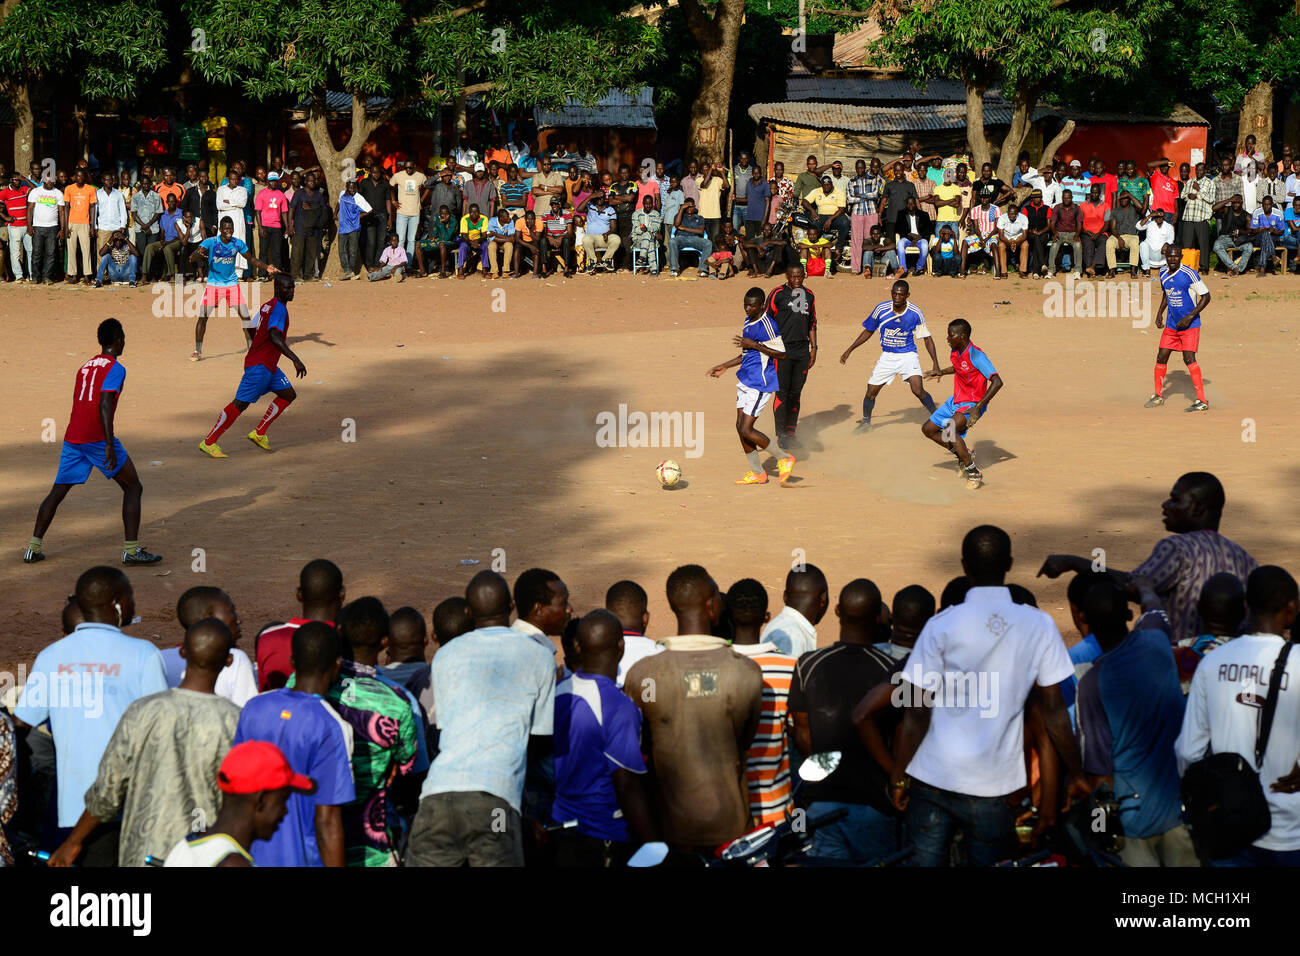 BURKINA FASO, Bobo Dioulasso, jóvenes ver un partido de fútbol / Jugendliche Gmbh beim Fussballspiel Foto de stock